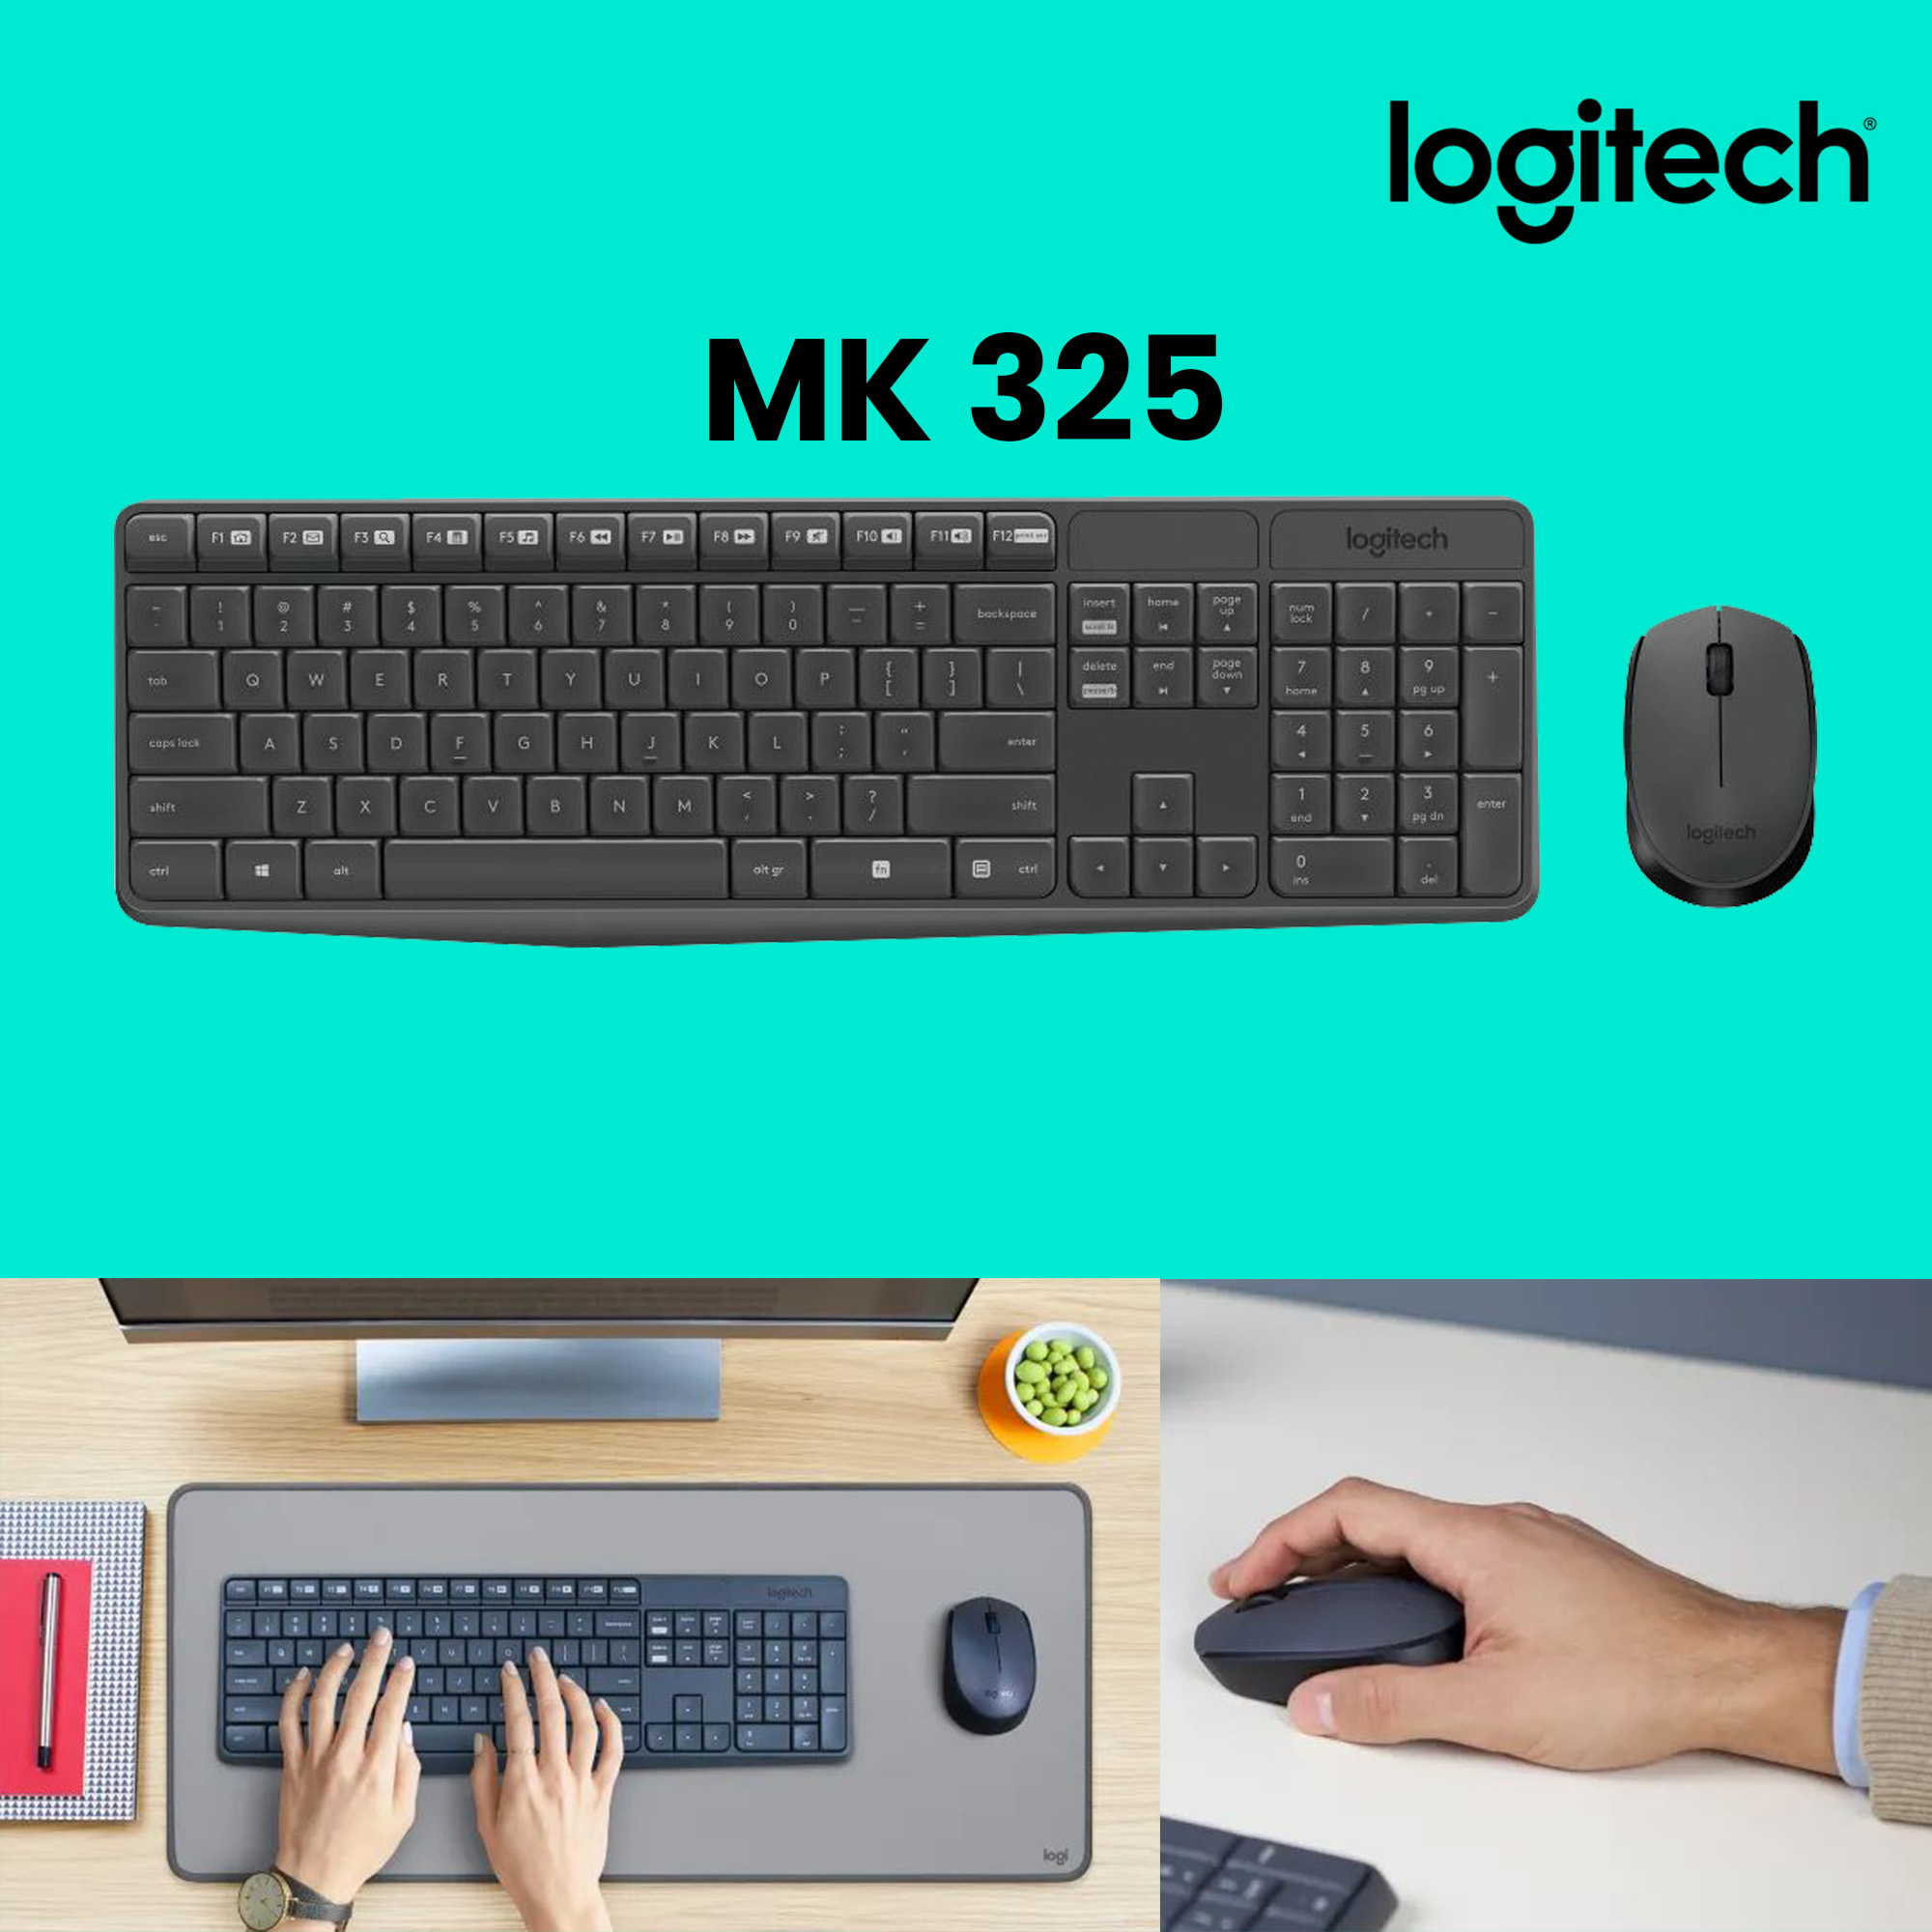 logitech-mk235-wireless-keyboard-mouse-combo-02.jpg